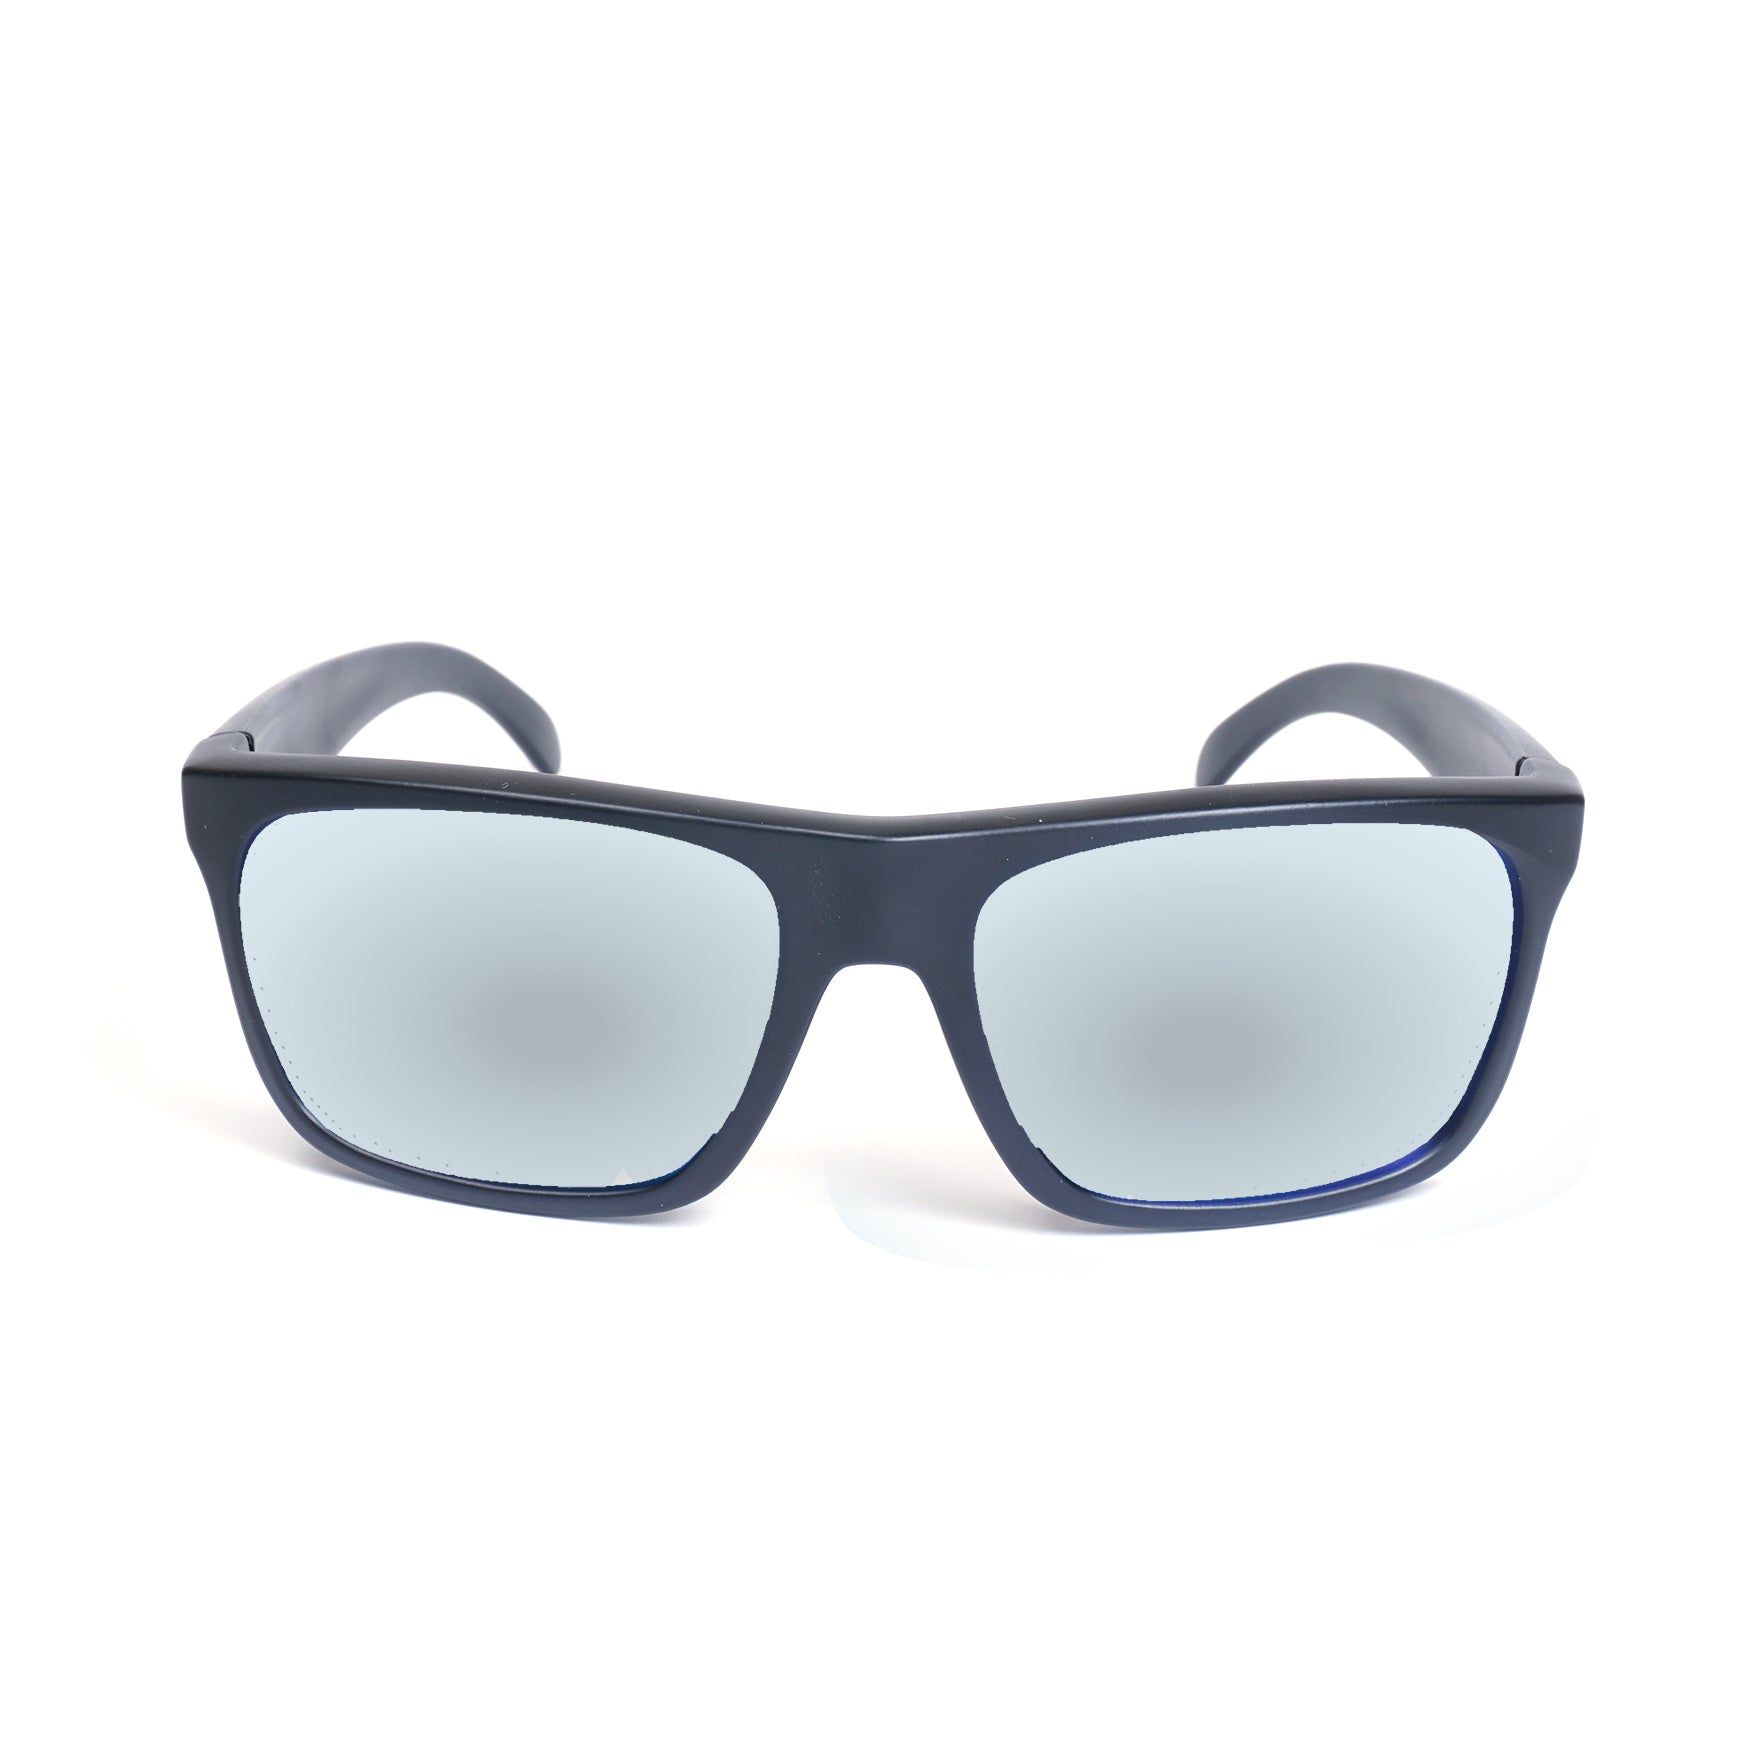 Cast Floating Sunglasses - Polarized